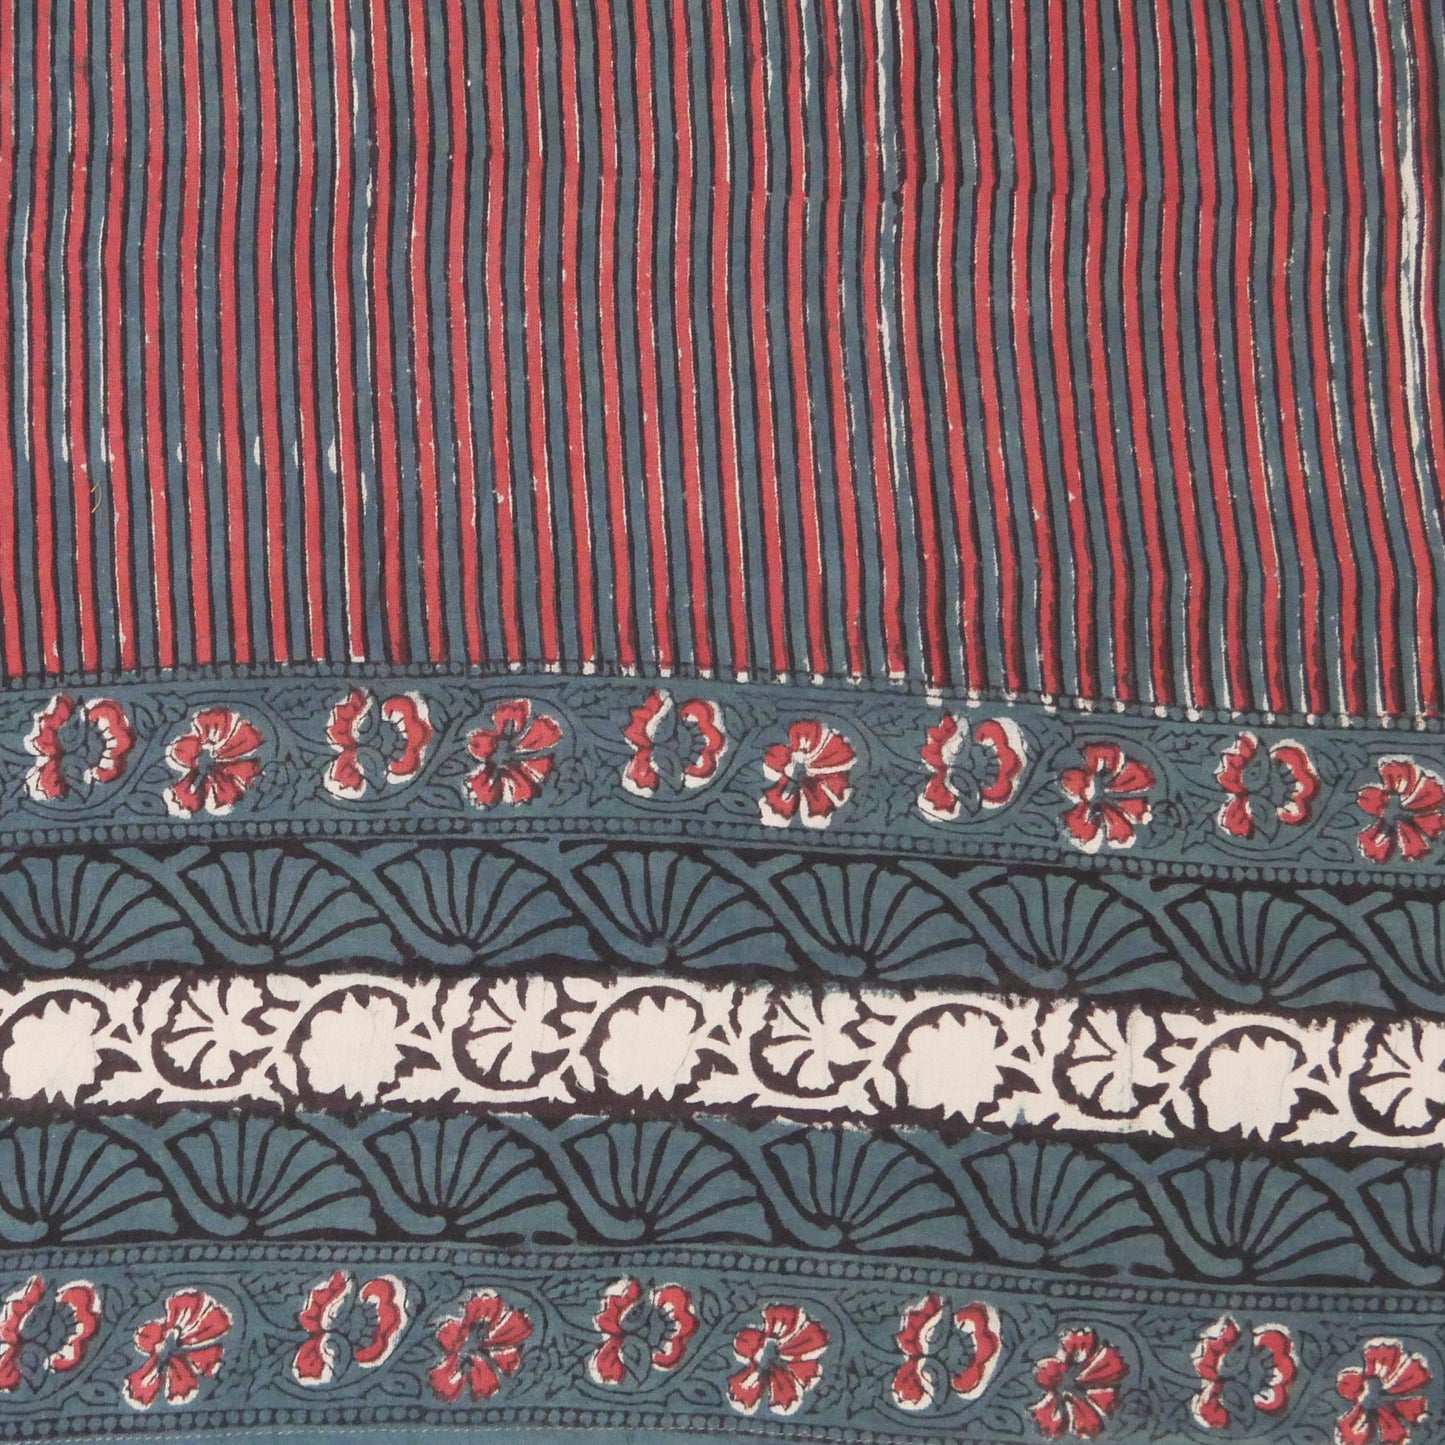 Cotton Bagru Stripe Panel Print Dress